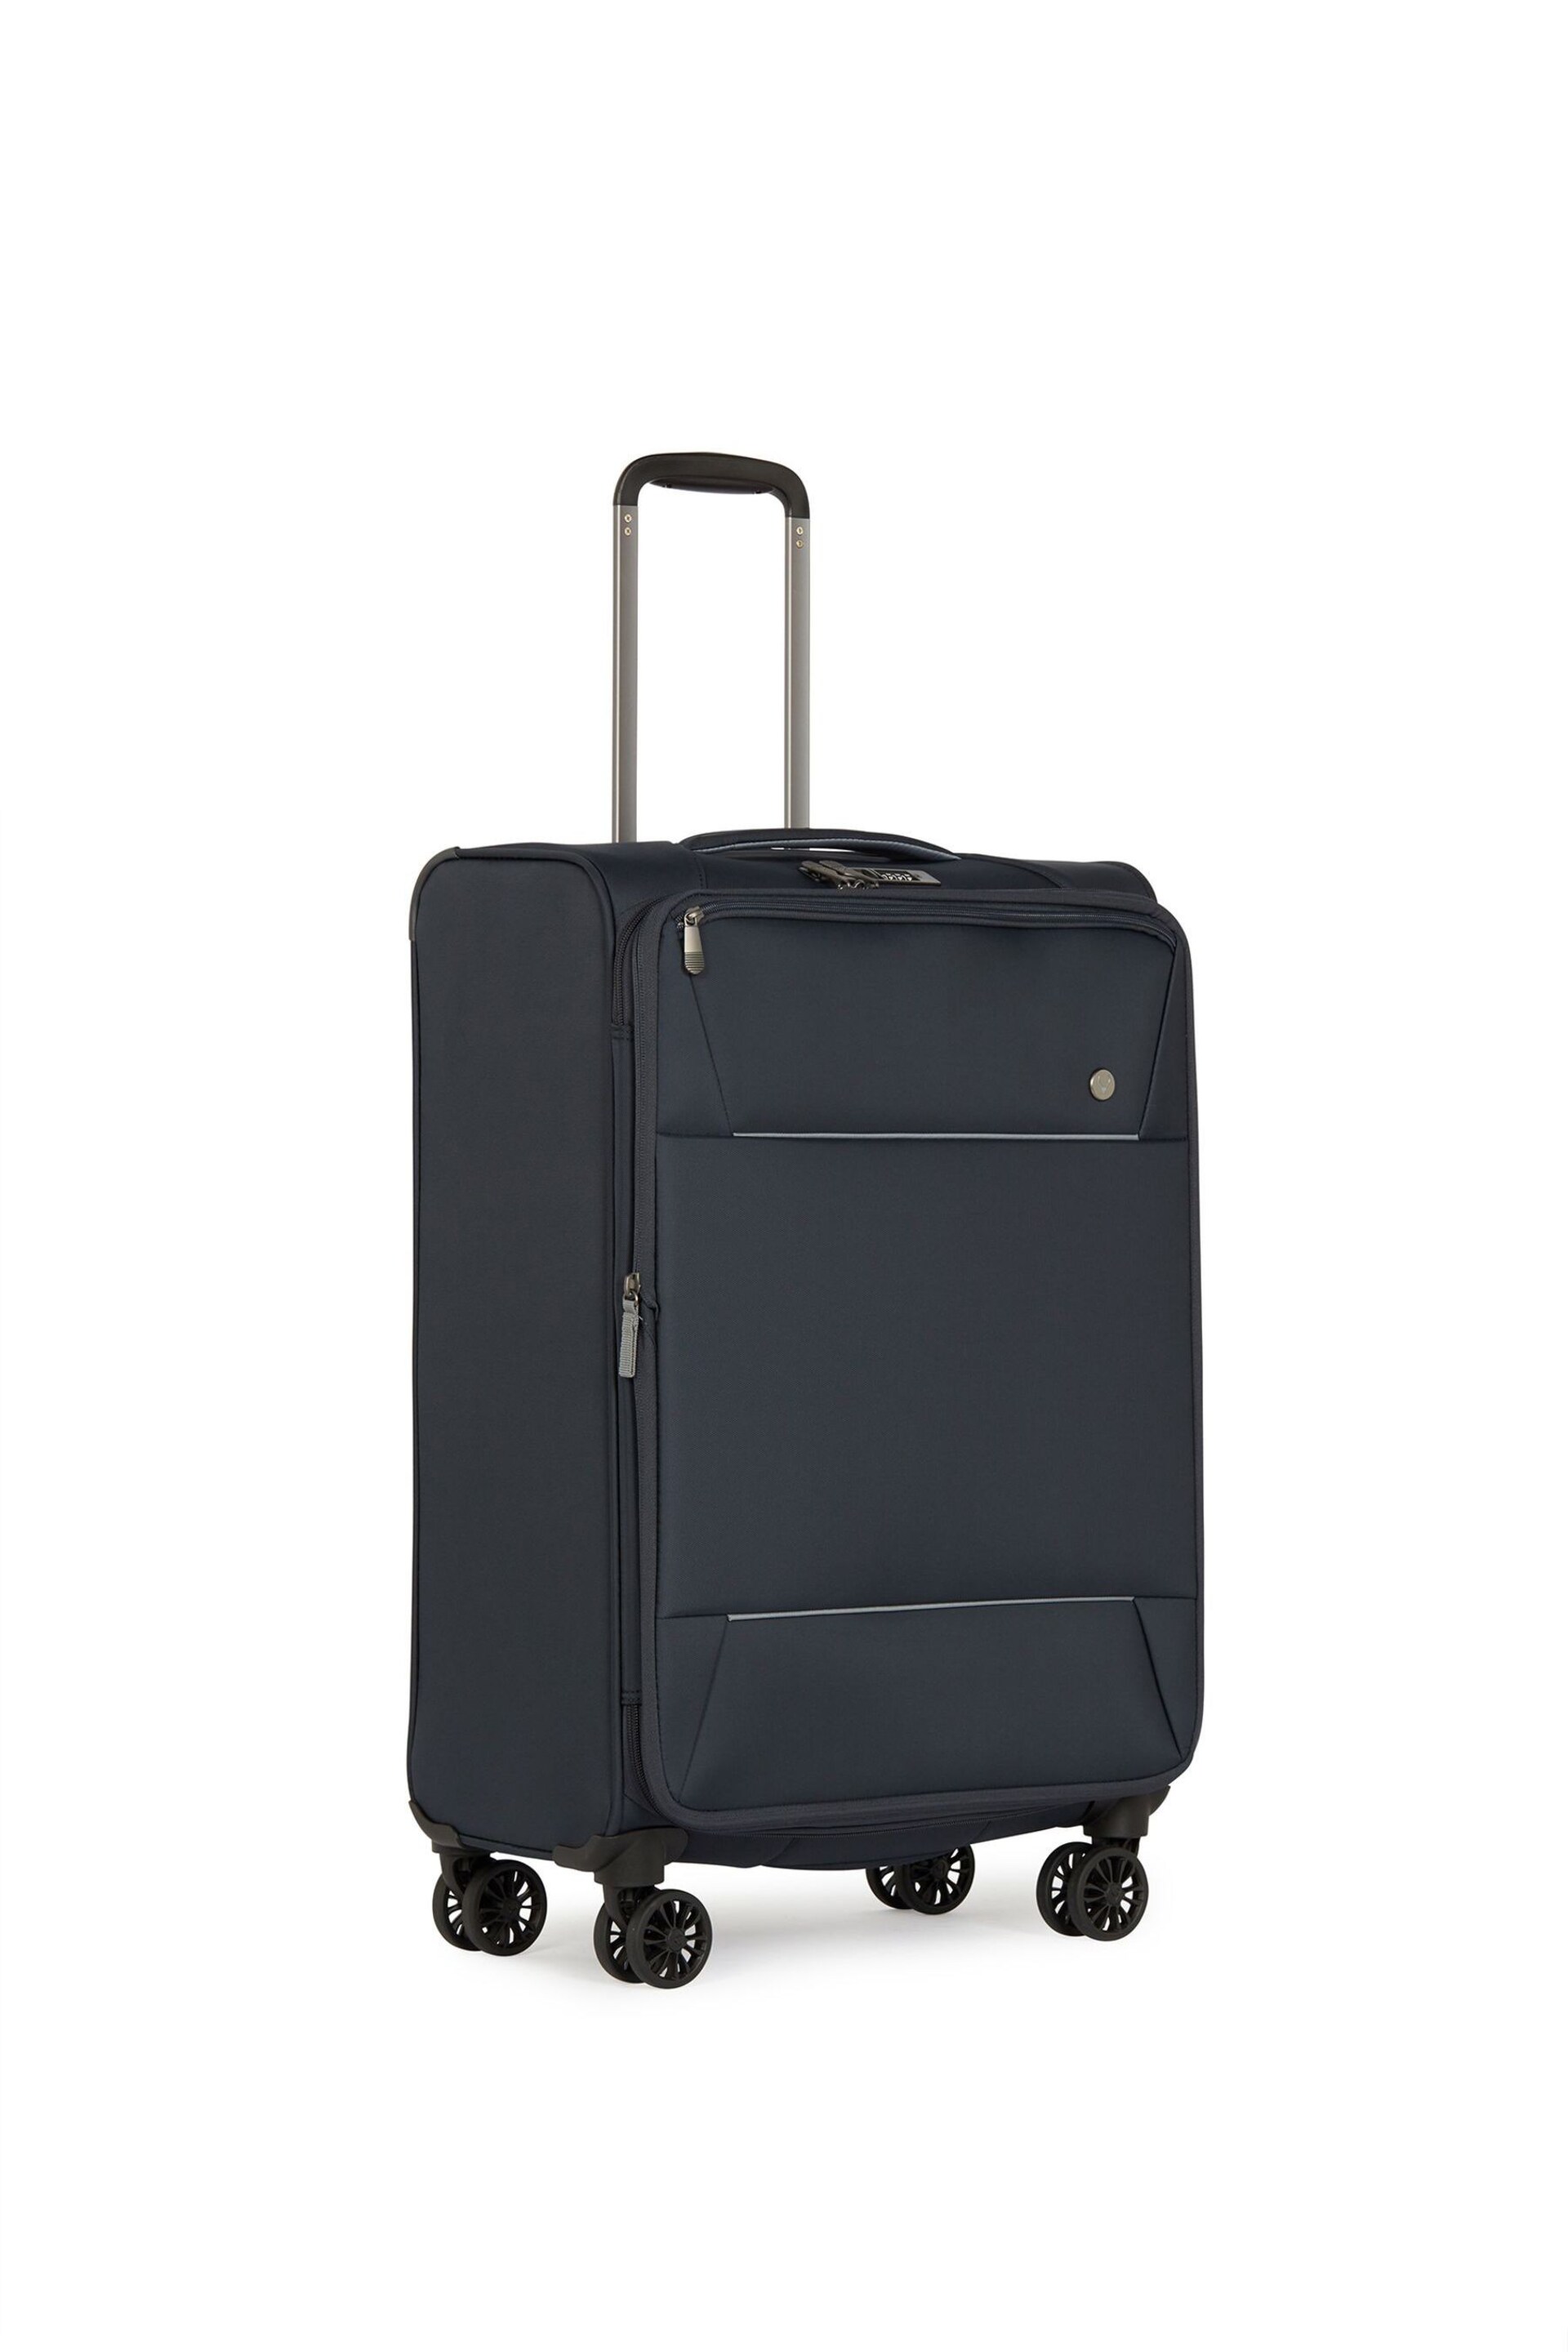 Antler Blue Brixham Medium Suitcase - Image 3 of 6